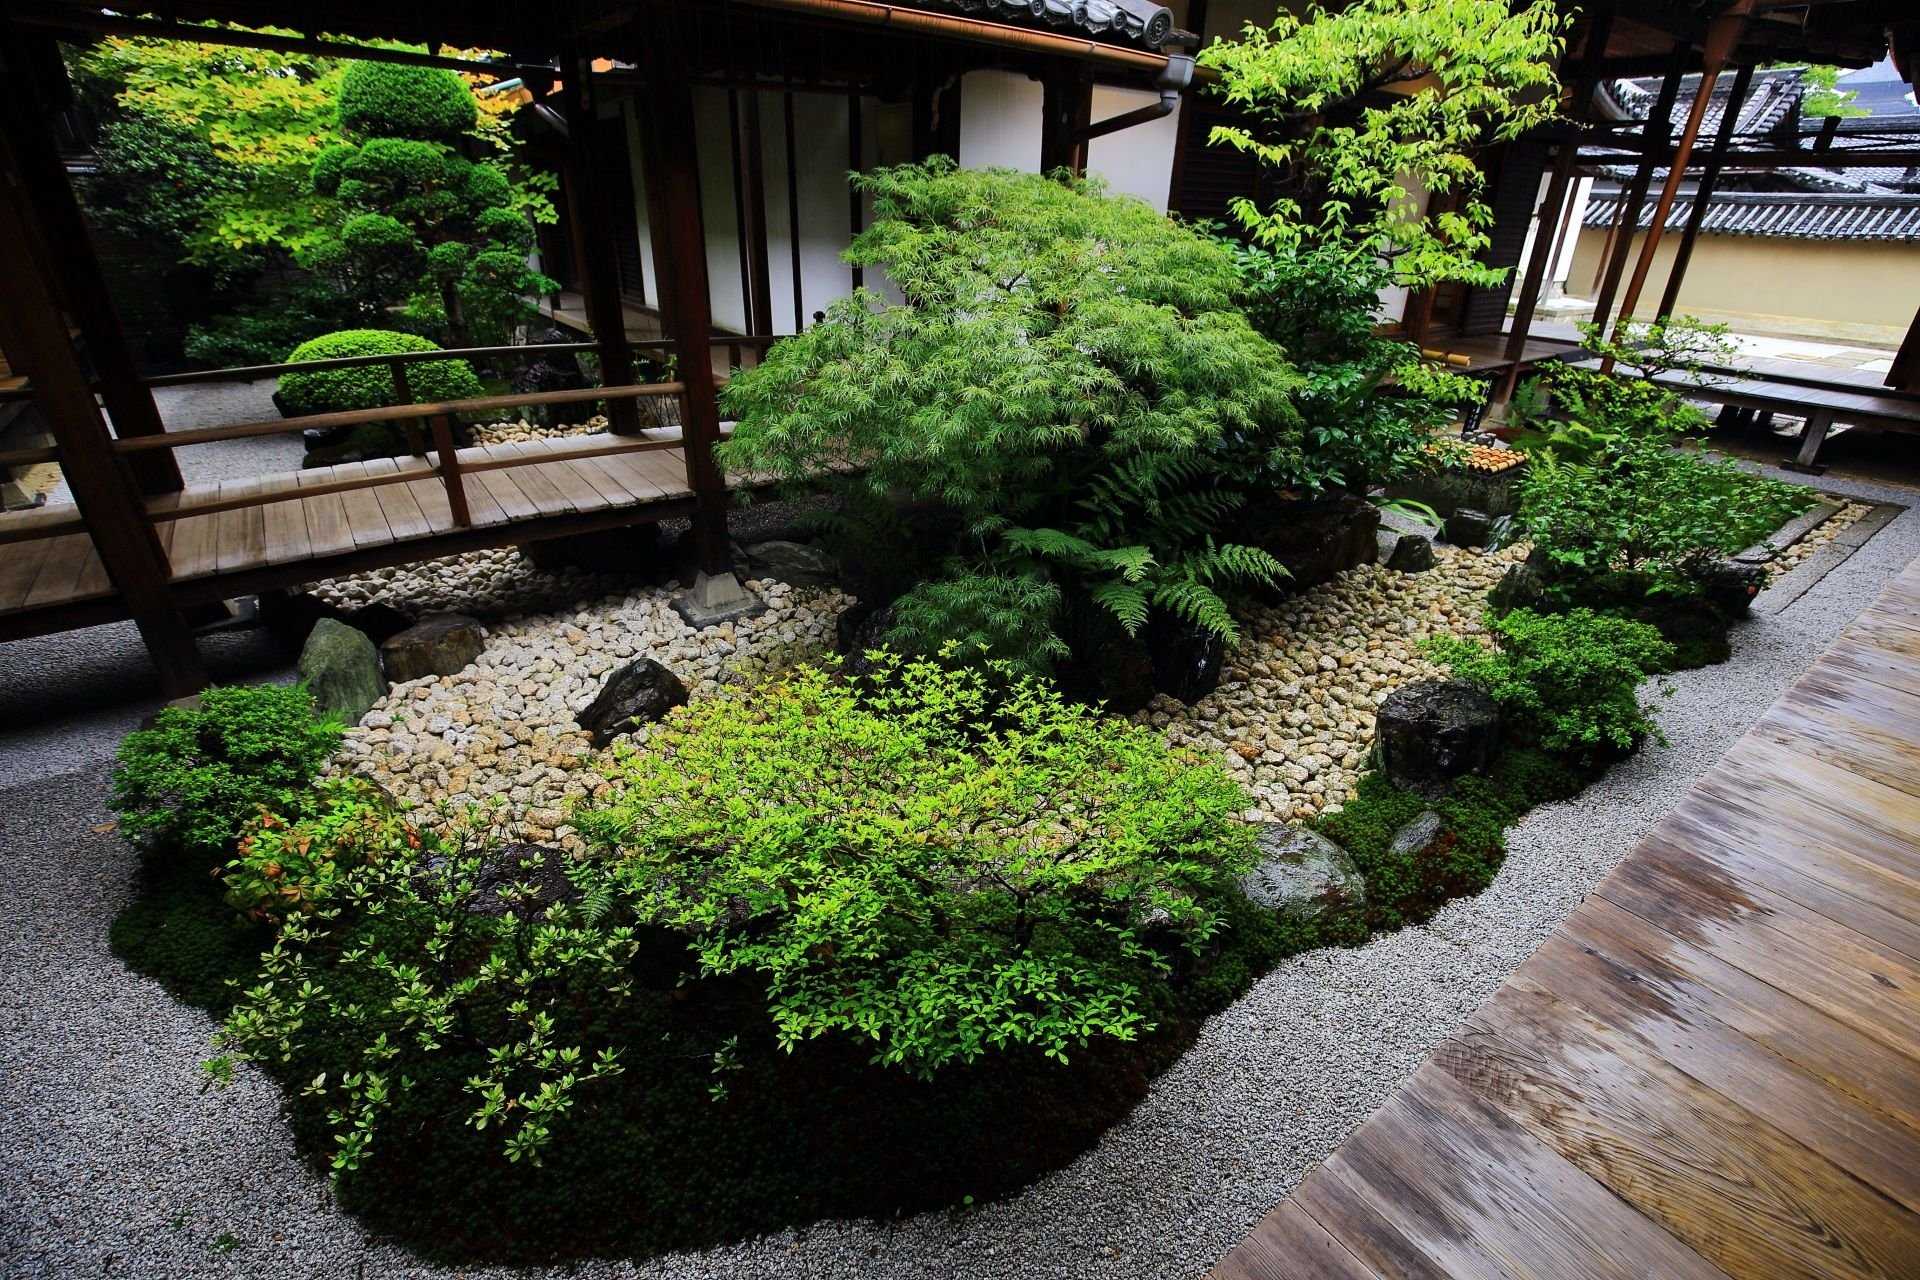 Создание японского сада: фото композиций, советы по планировке и декоративному оформлению